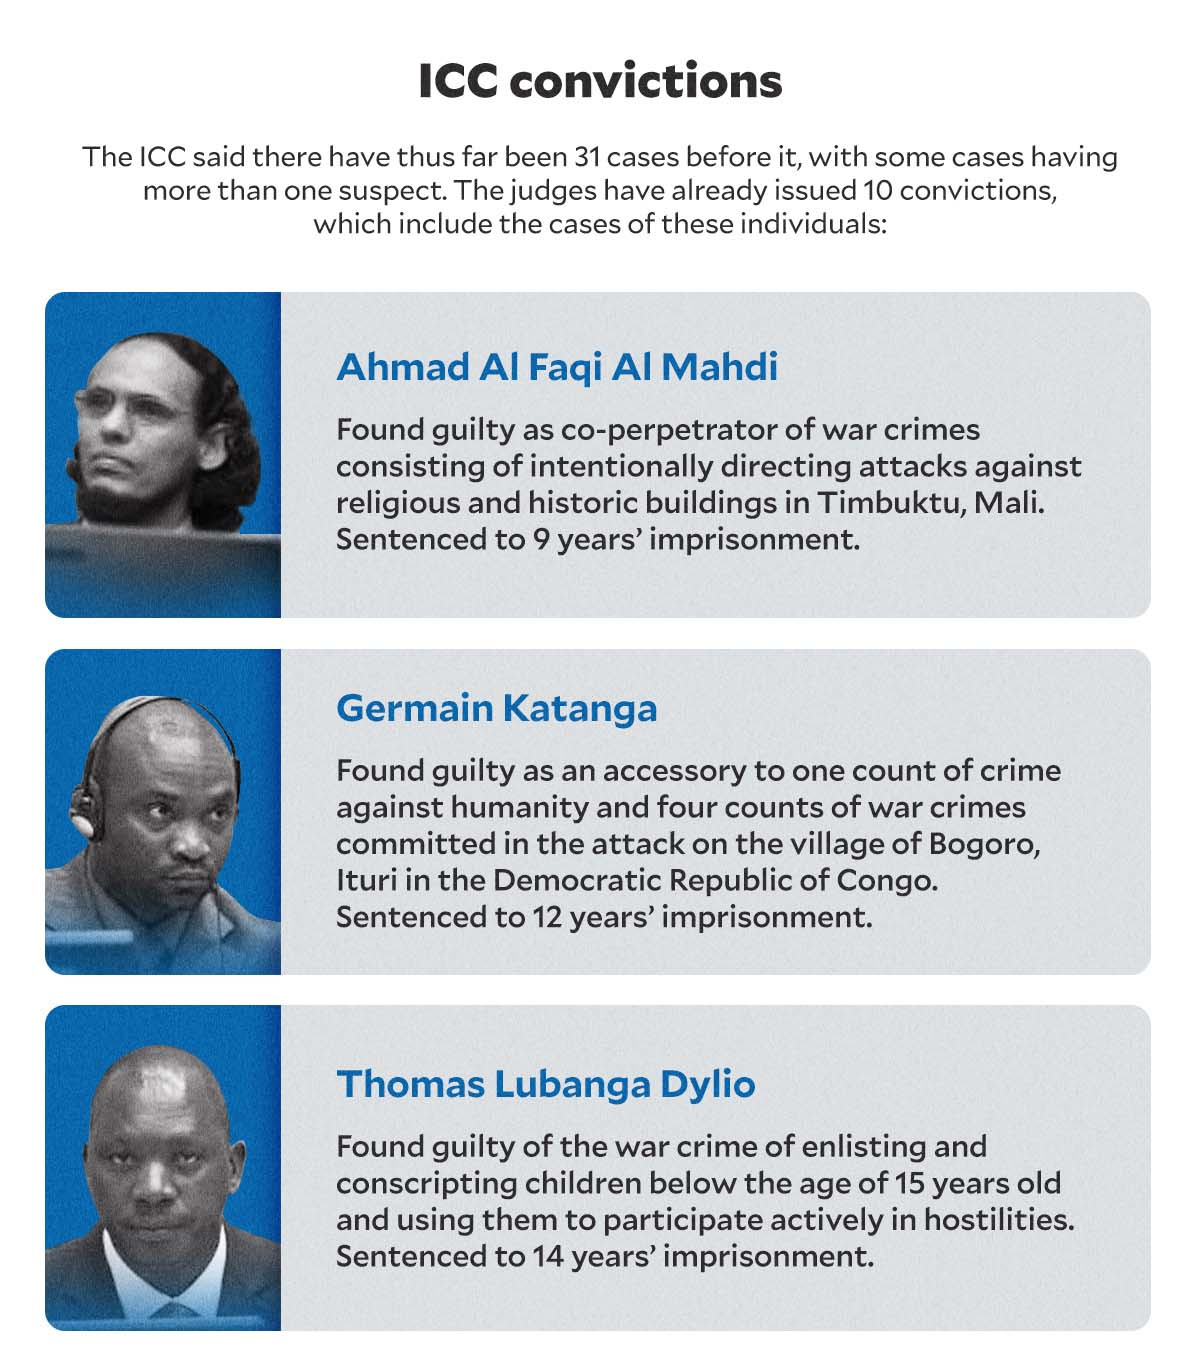 ICC CONVICTIONS